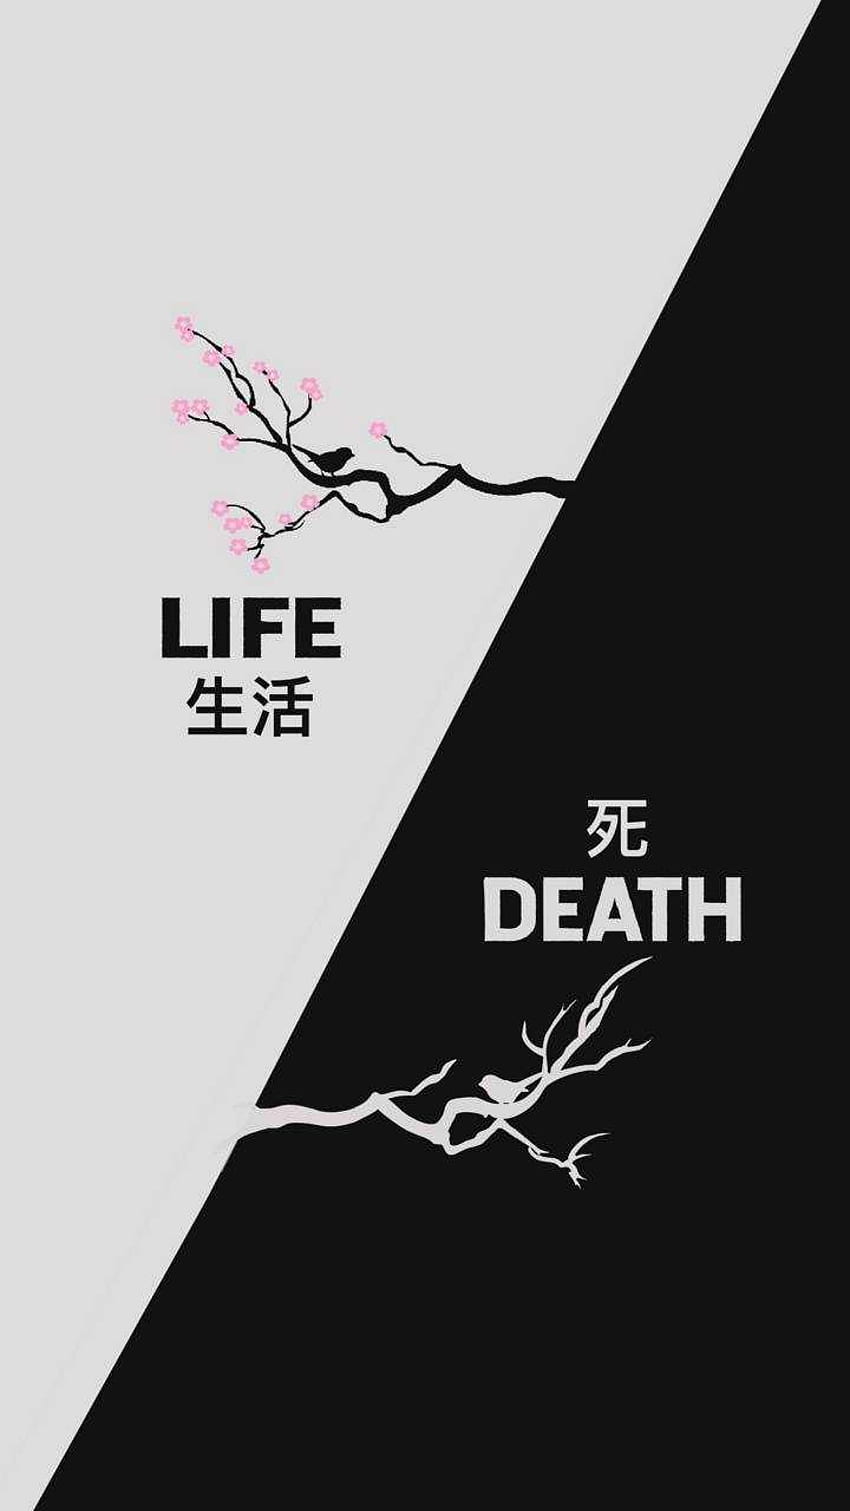 iPhone Life and Death - Impressionante, estetica della morte Sfondo del telefono HD